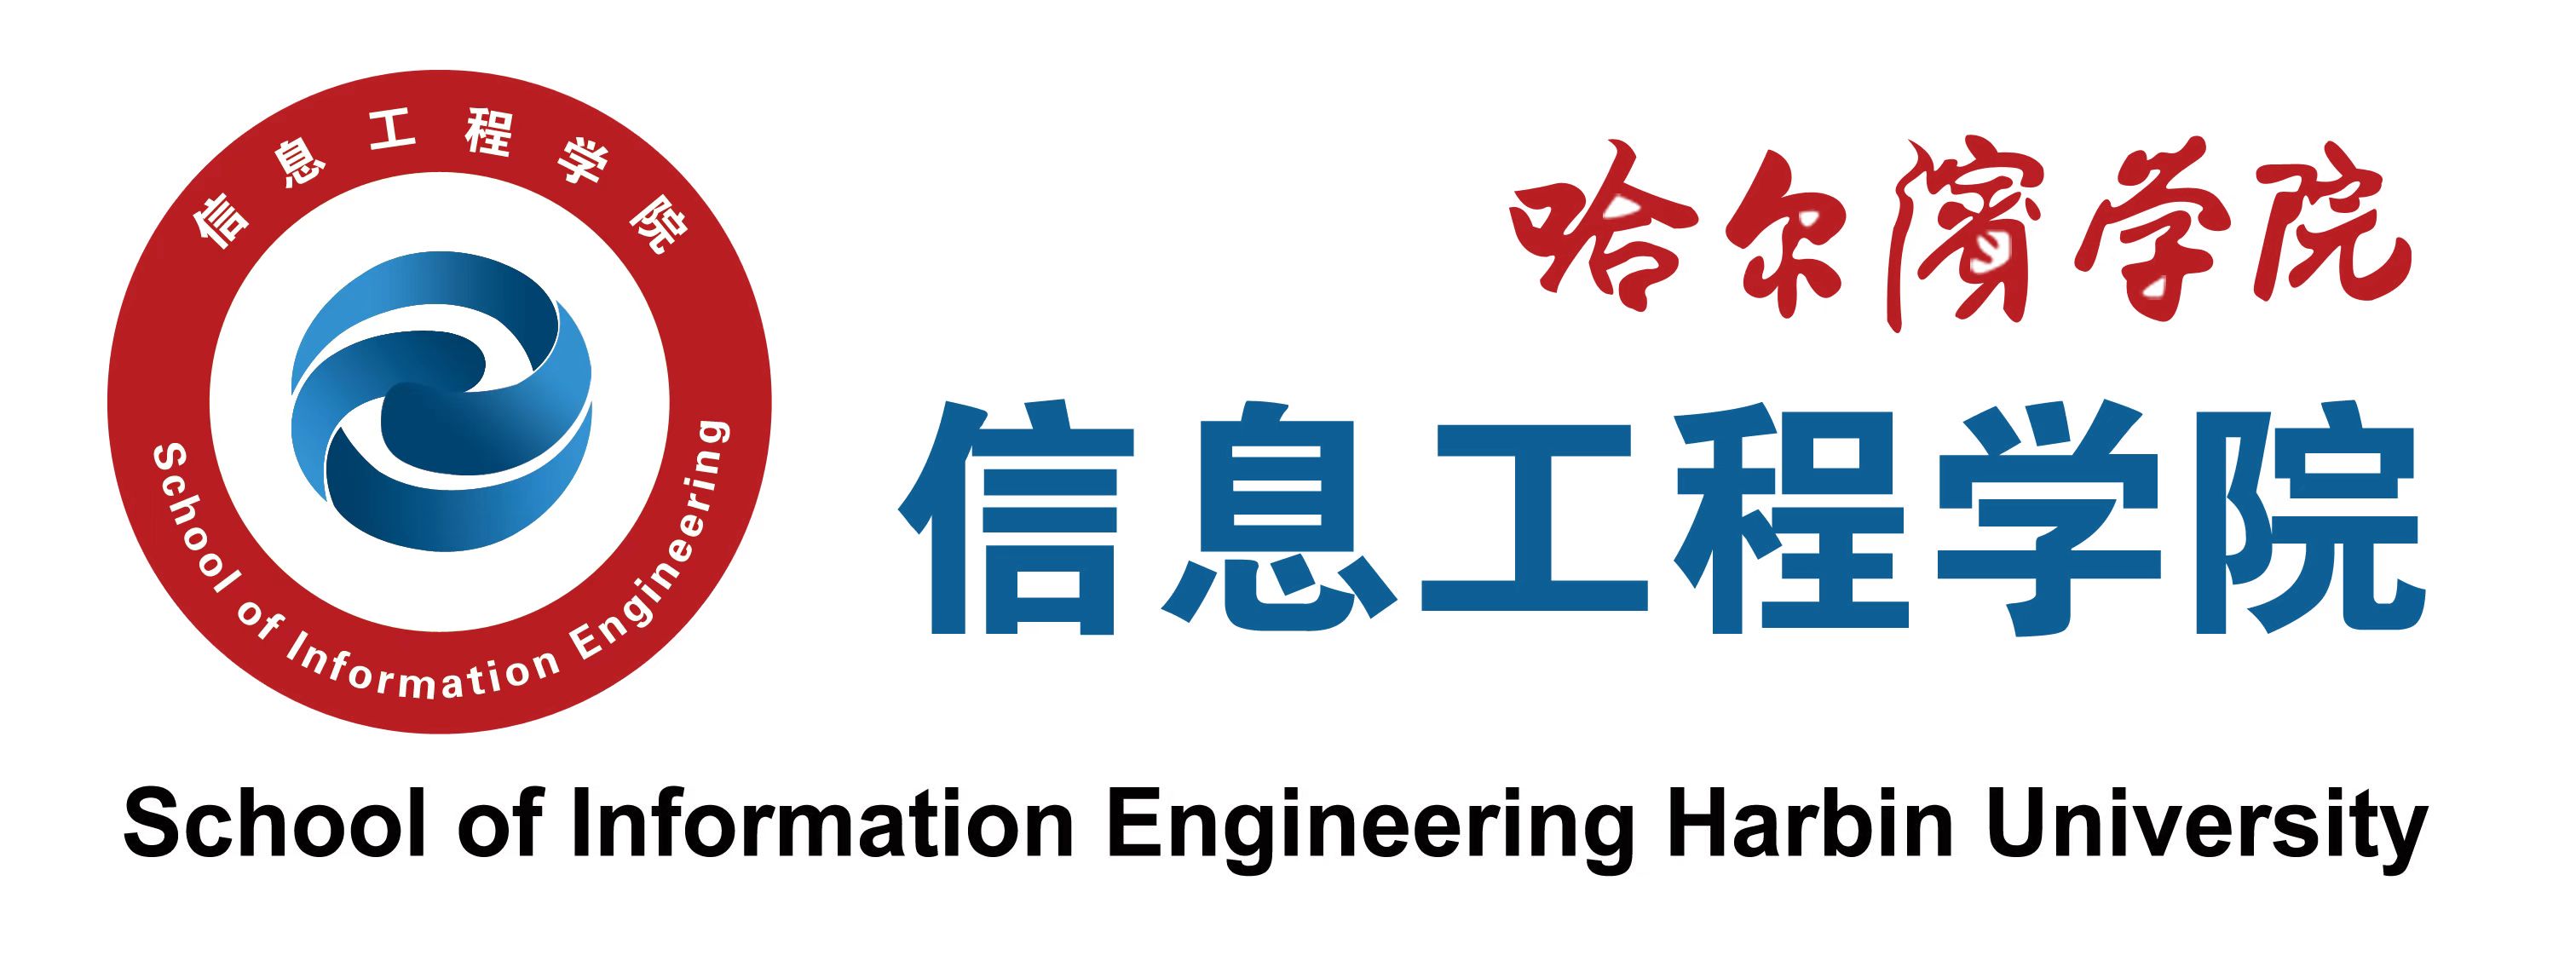 哈尔滨学院信息工程学院logo.jpg